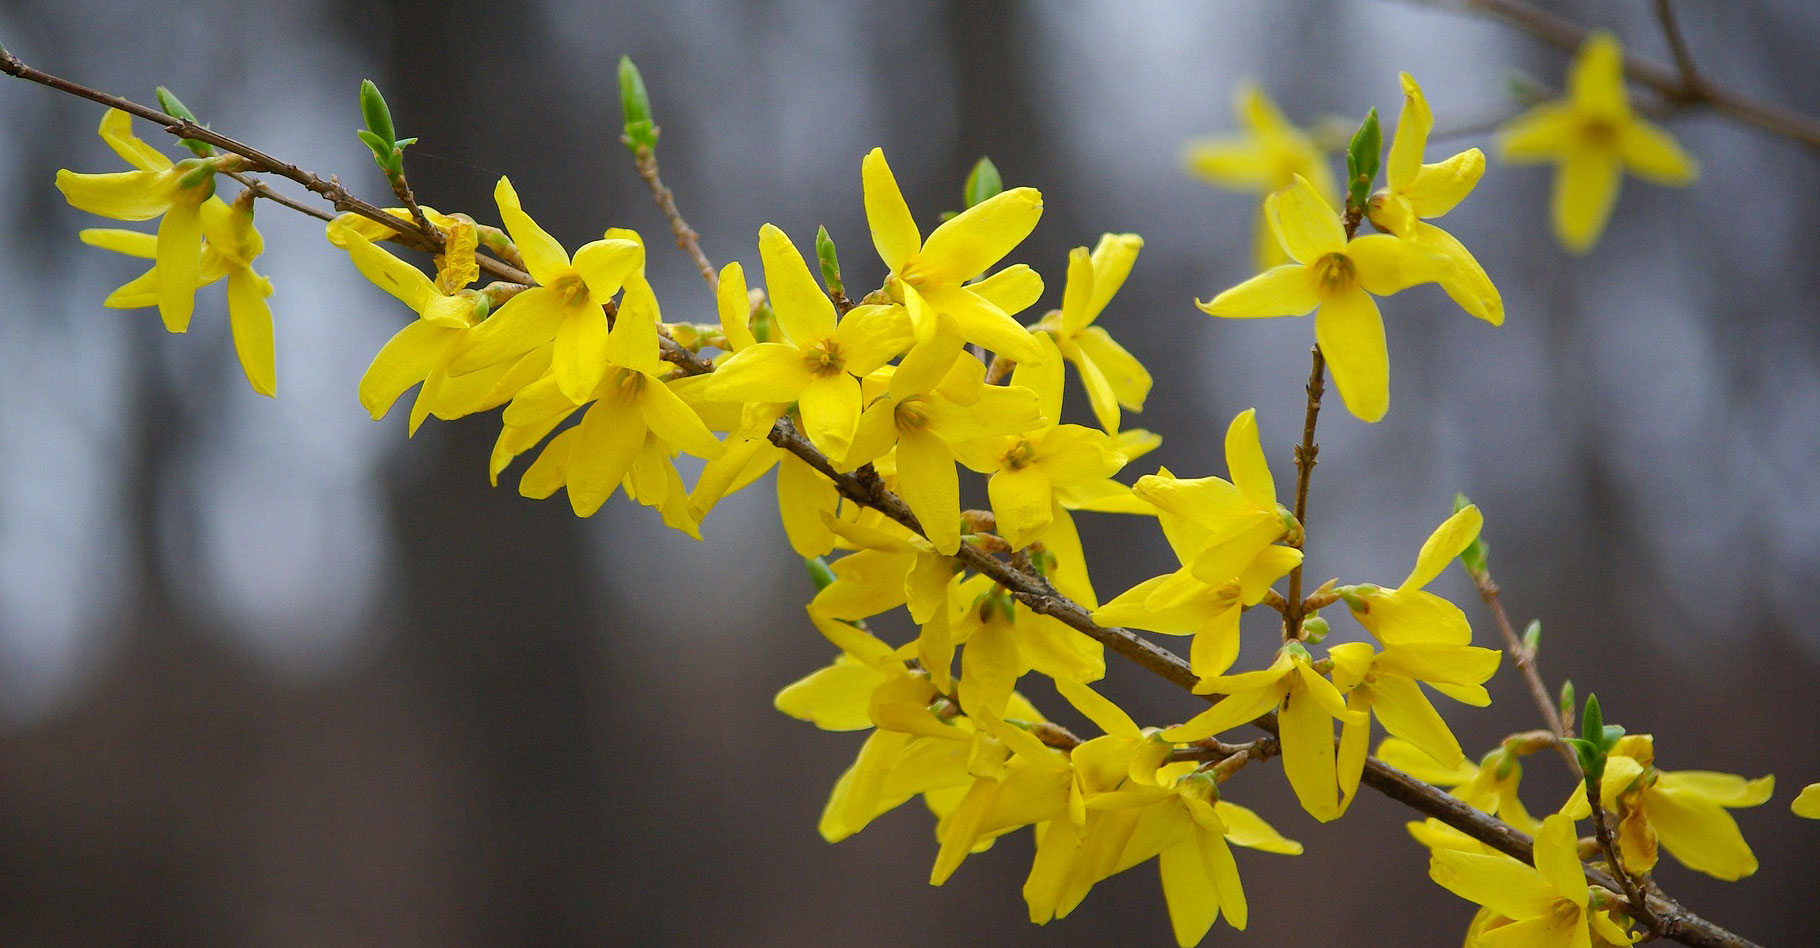 Le forsythia en fleur, c'est l'arrivée du printemps. © Kimdaejung, Pixabay, DP